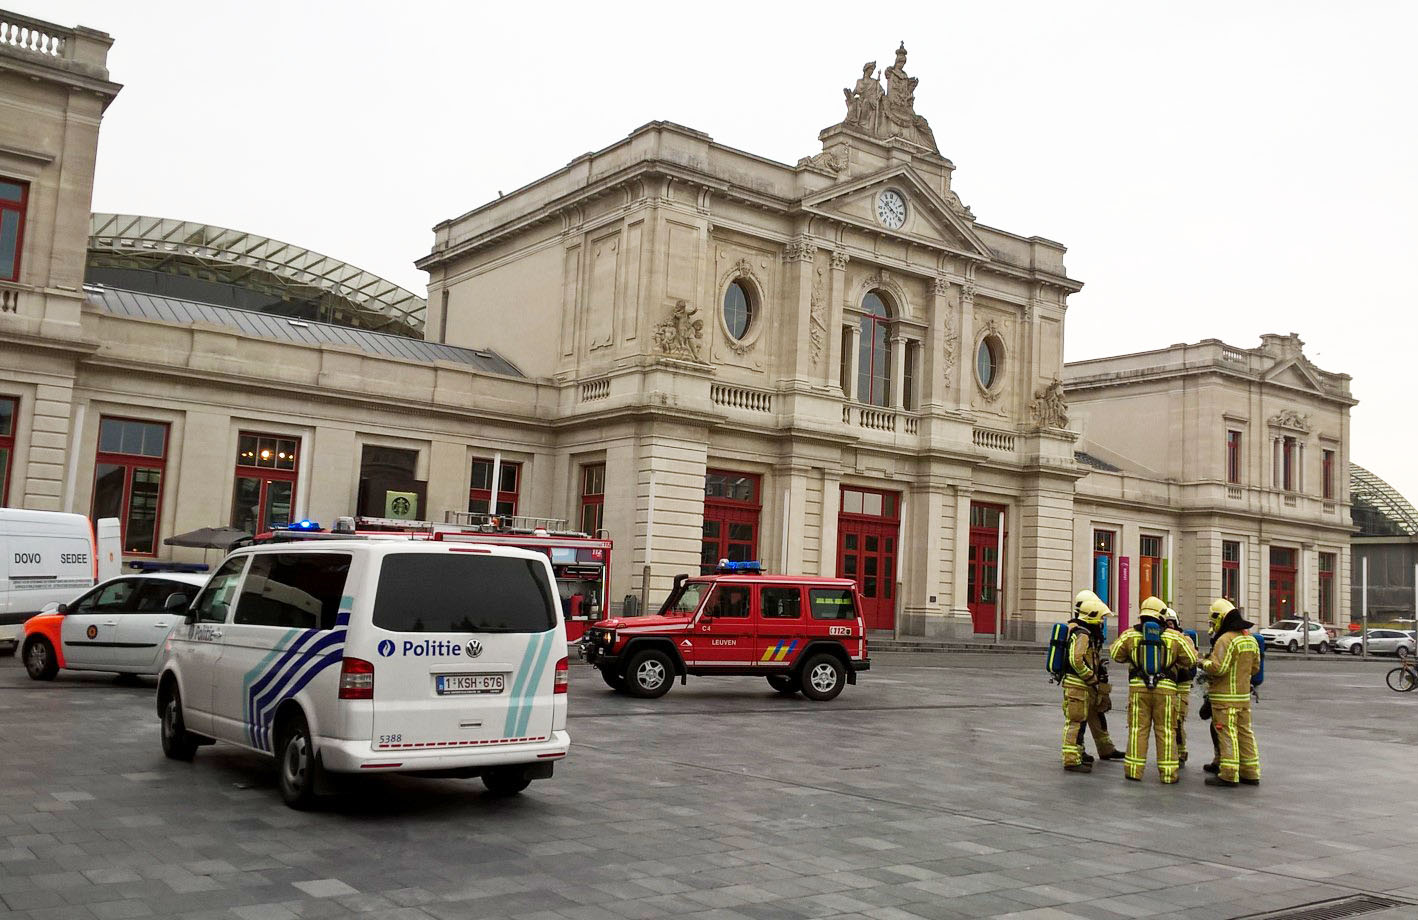 Am 24. März wurden der Bahnhof von Löwen und der Vorplatz (Martelarenplein) geräumt - allerdings stellte sich der Bombenalarm als falsch heraus